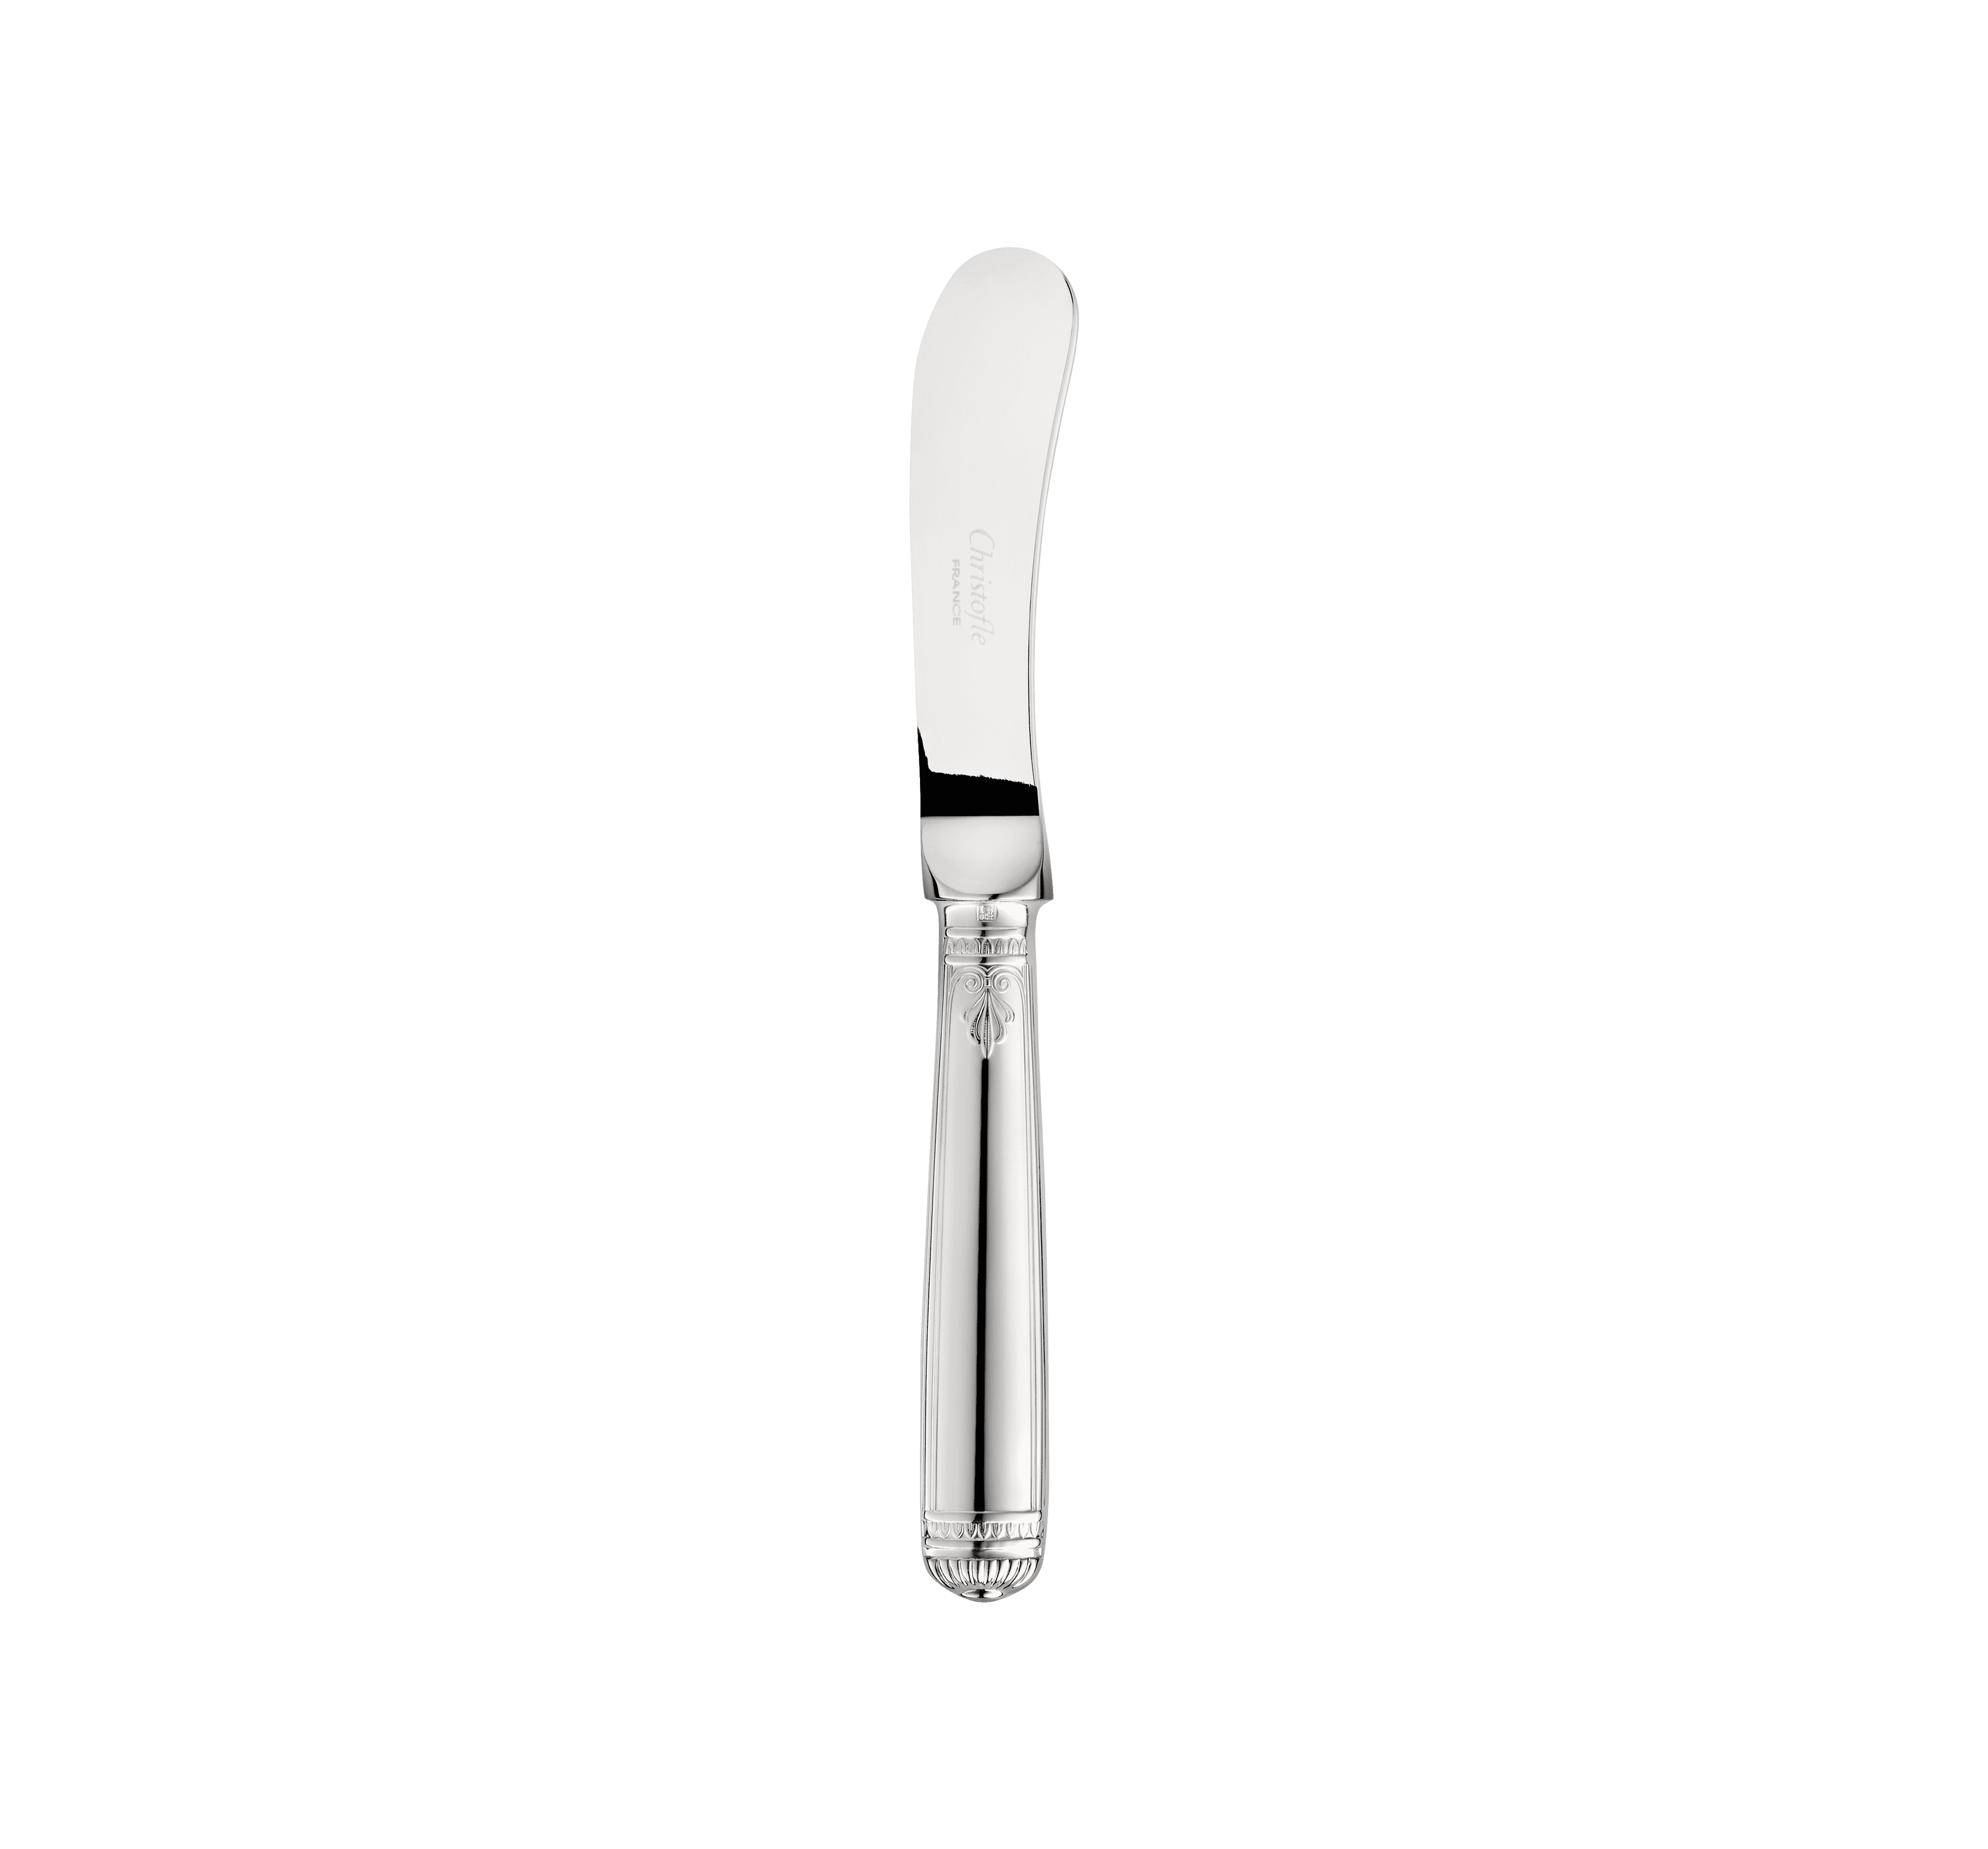 Malmaison Silver-Plated Butter Knife